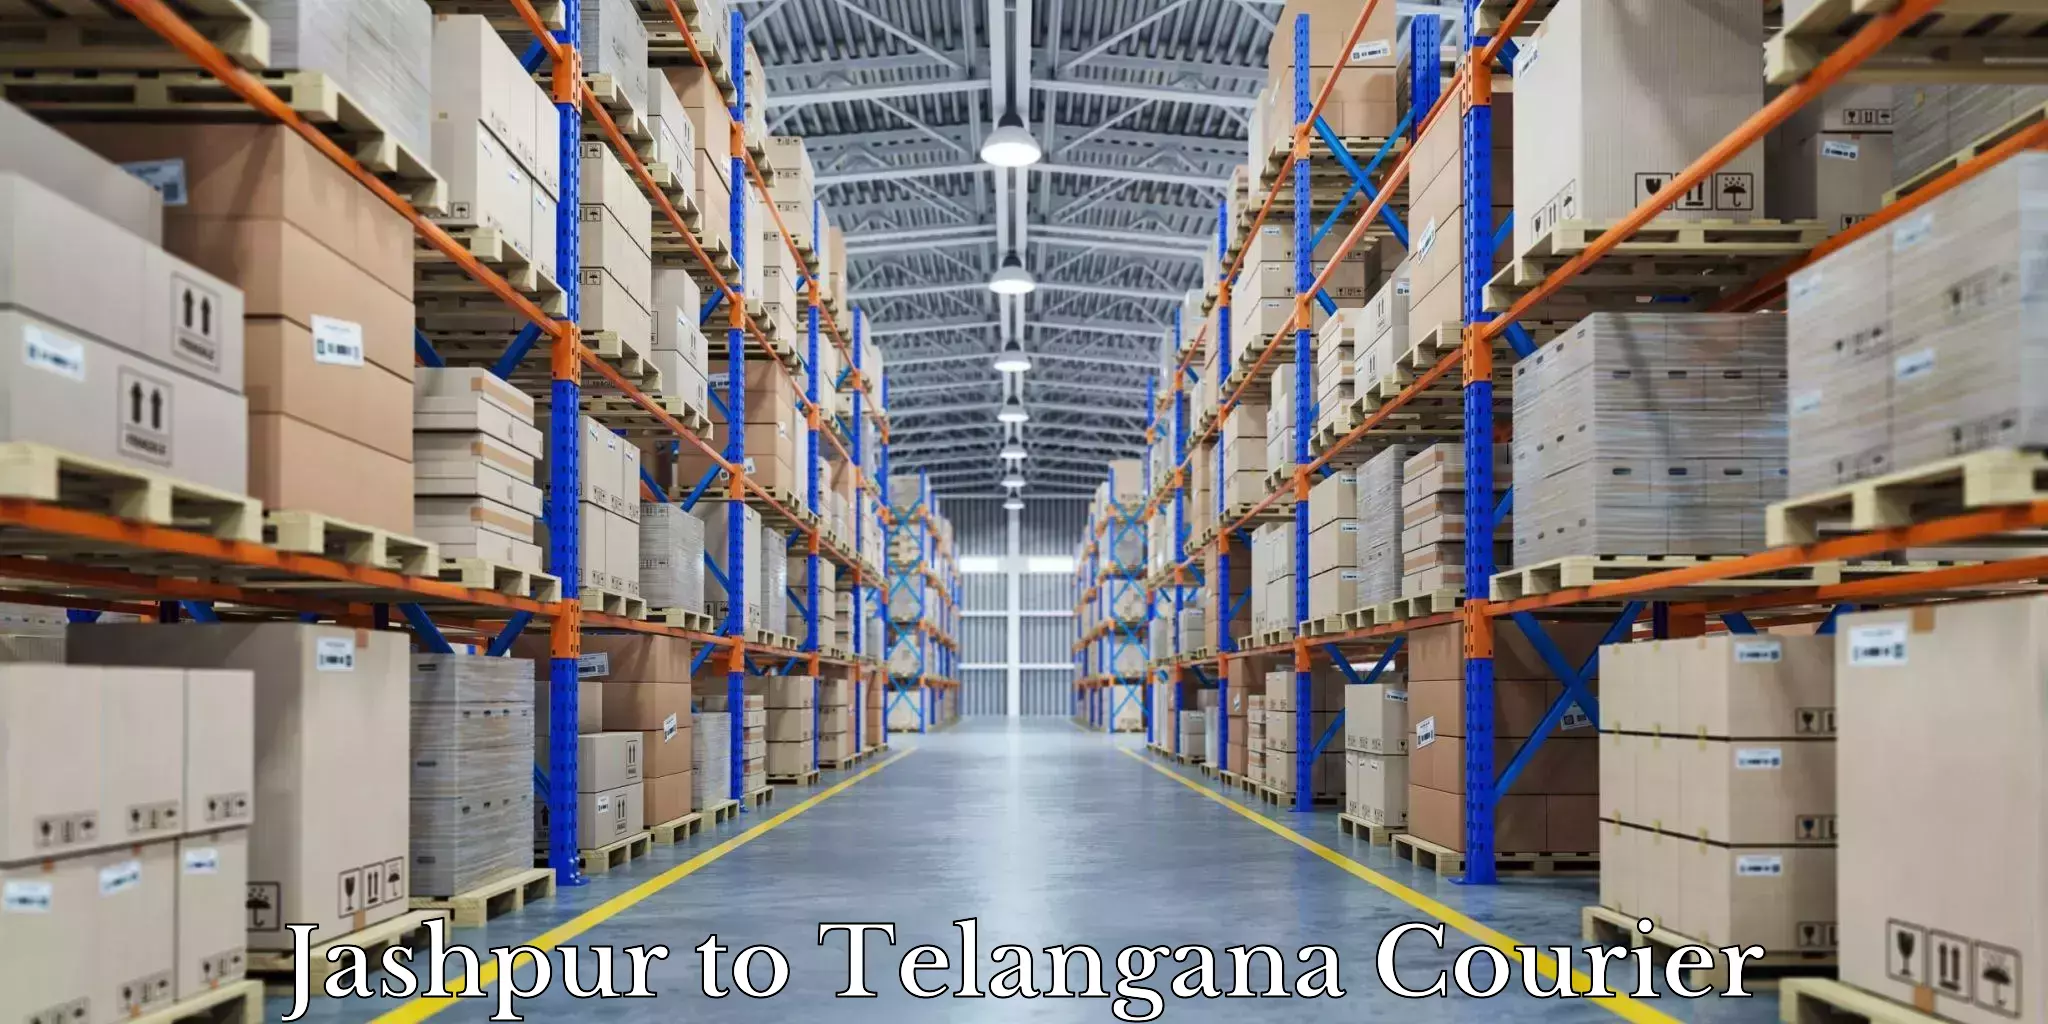 Trusted moving company Jashpur to Telangana